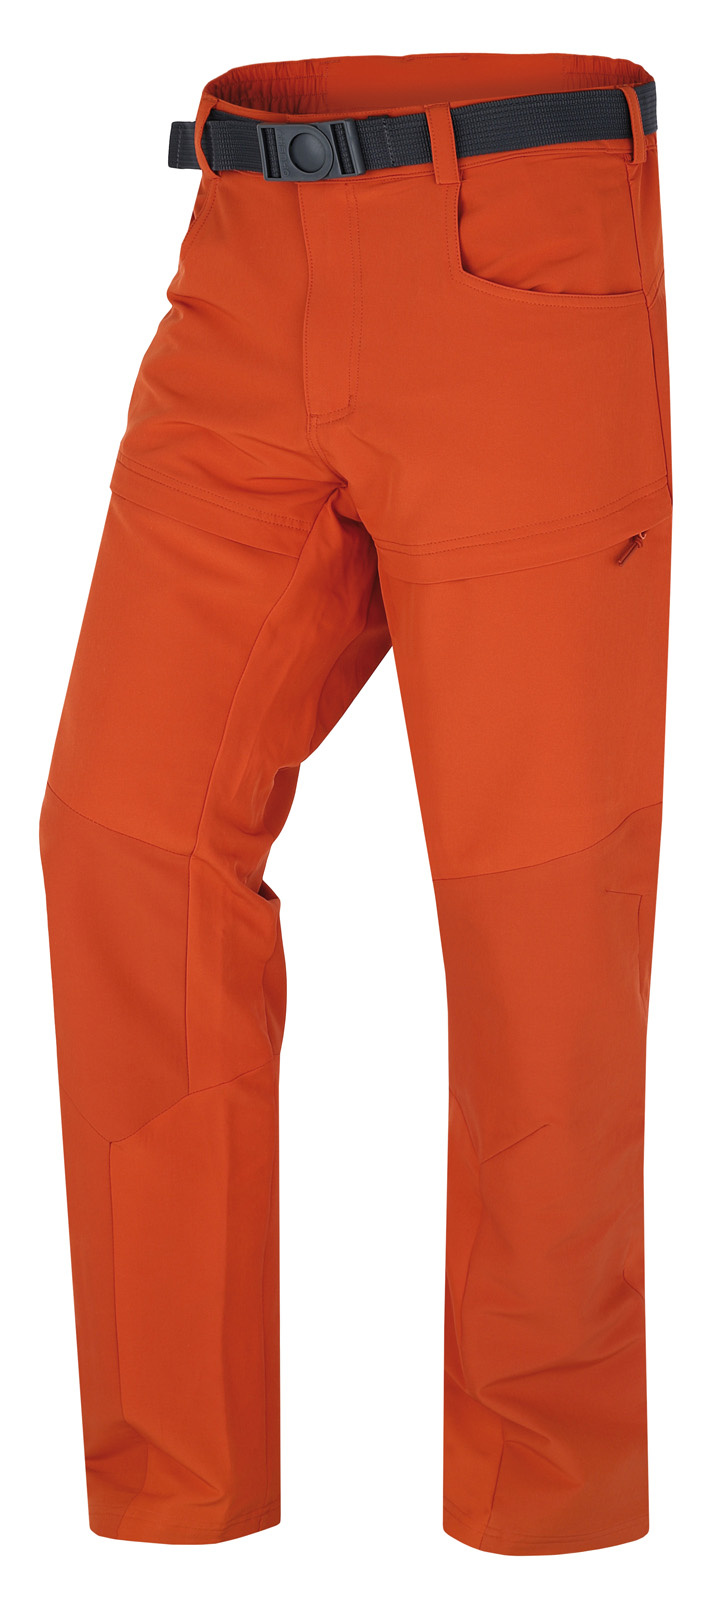 Pánské outdoorové kalhoty HUSKY Keiry oranžové Velikost: XXL